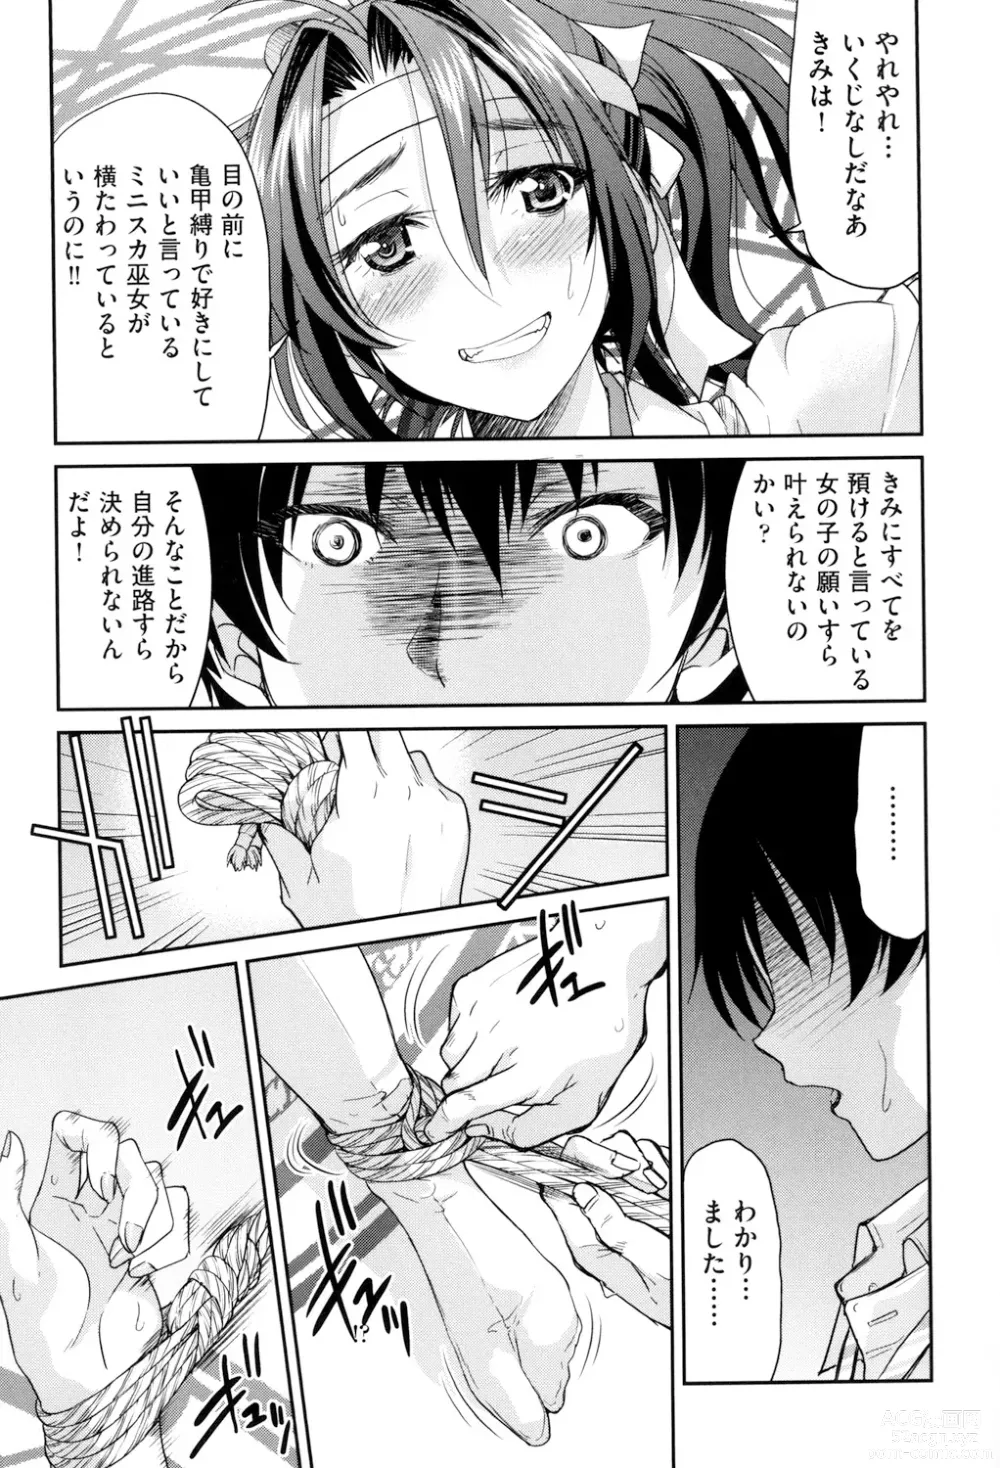 Page 179 of manga Akogare no Senpai o Shibatte Nigerarenaku Shite XXX.